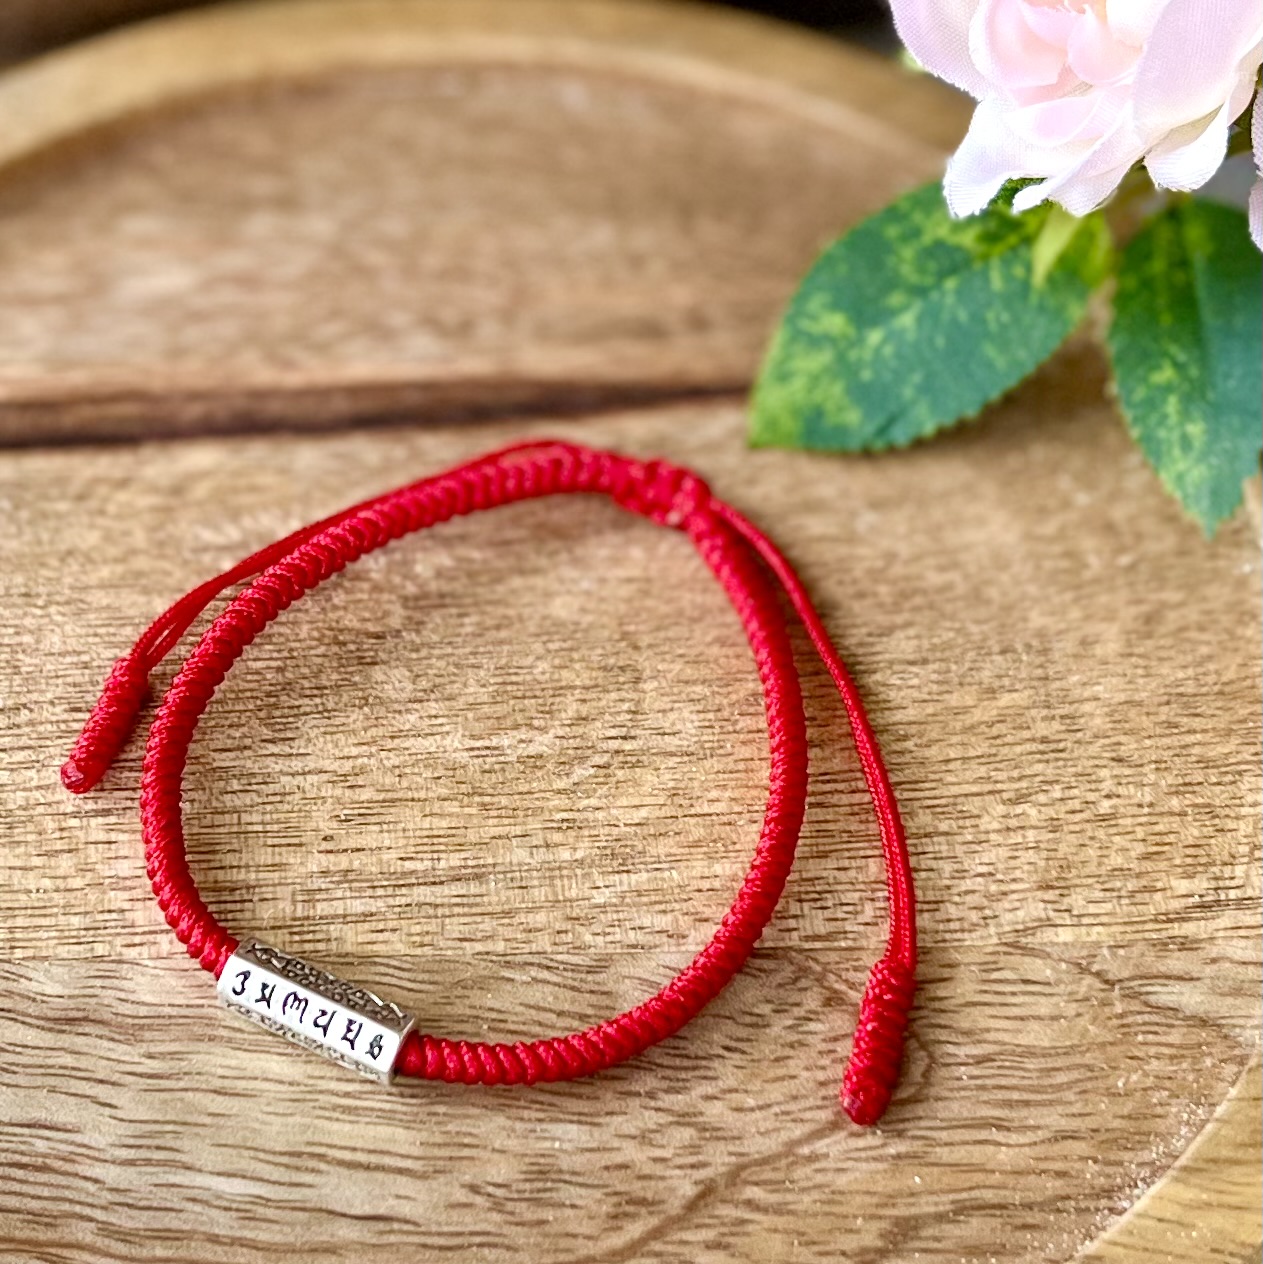 Le bracelet "Mantras" en Fil rouge sur un plateau en bois